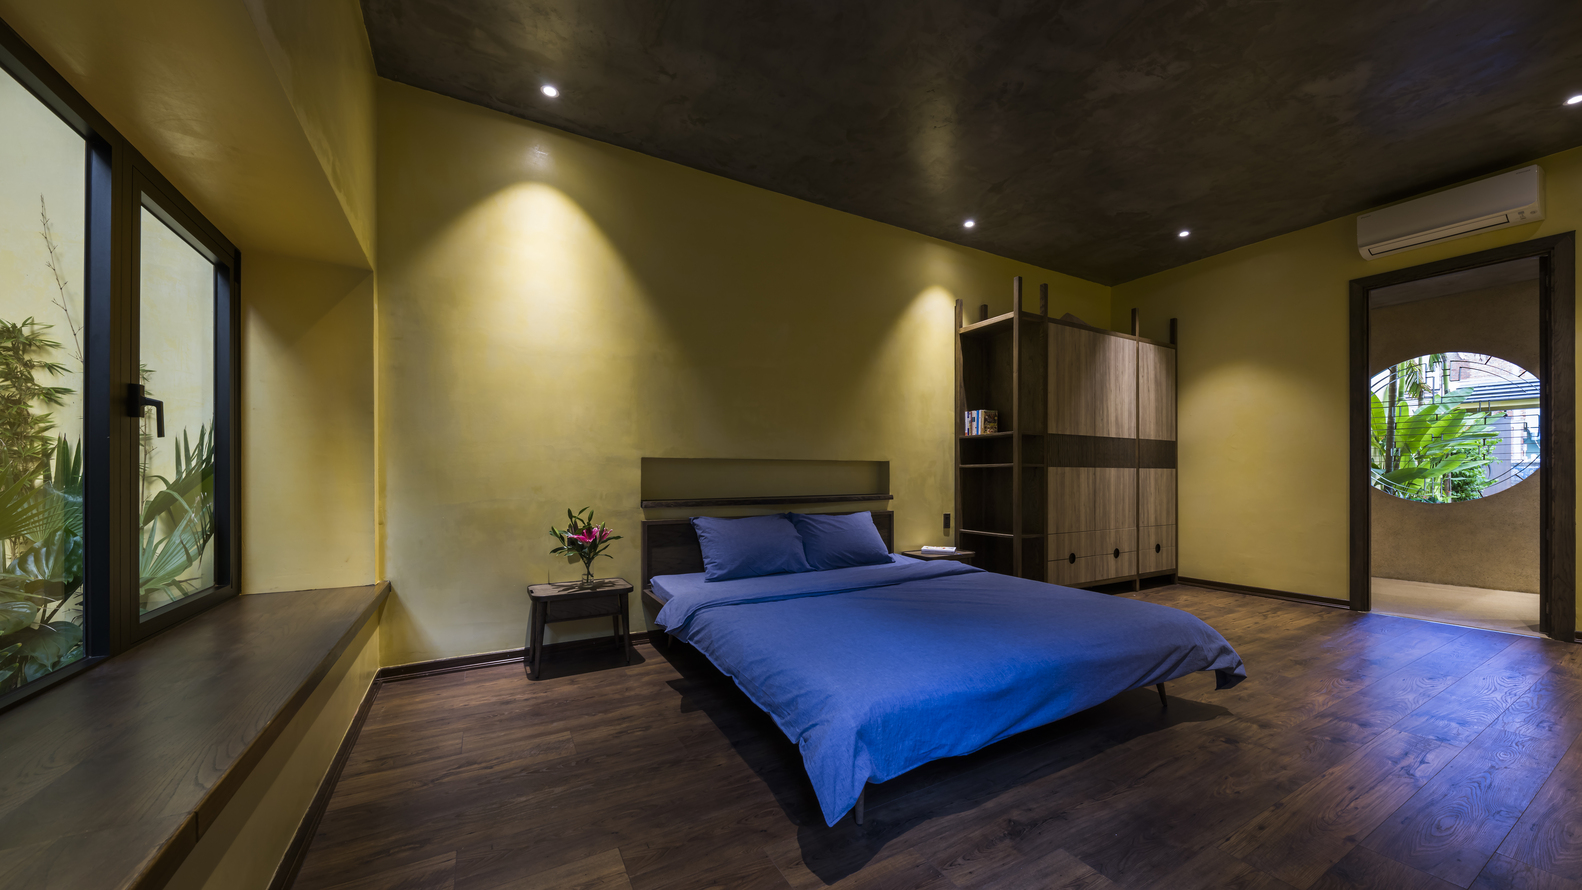 Phòng ngủ master rộng rãi, thiết kế nội thất tối giản tạo cảm giác thư thái cho người dùng.